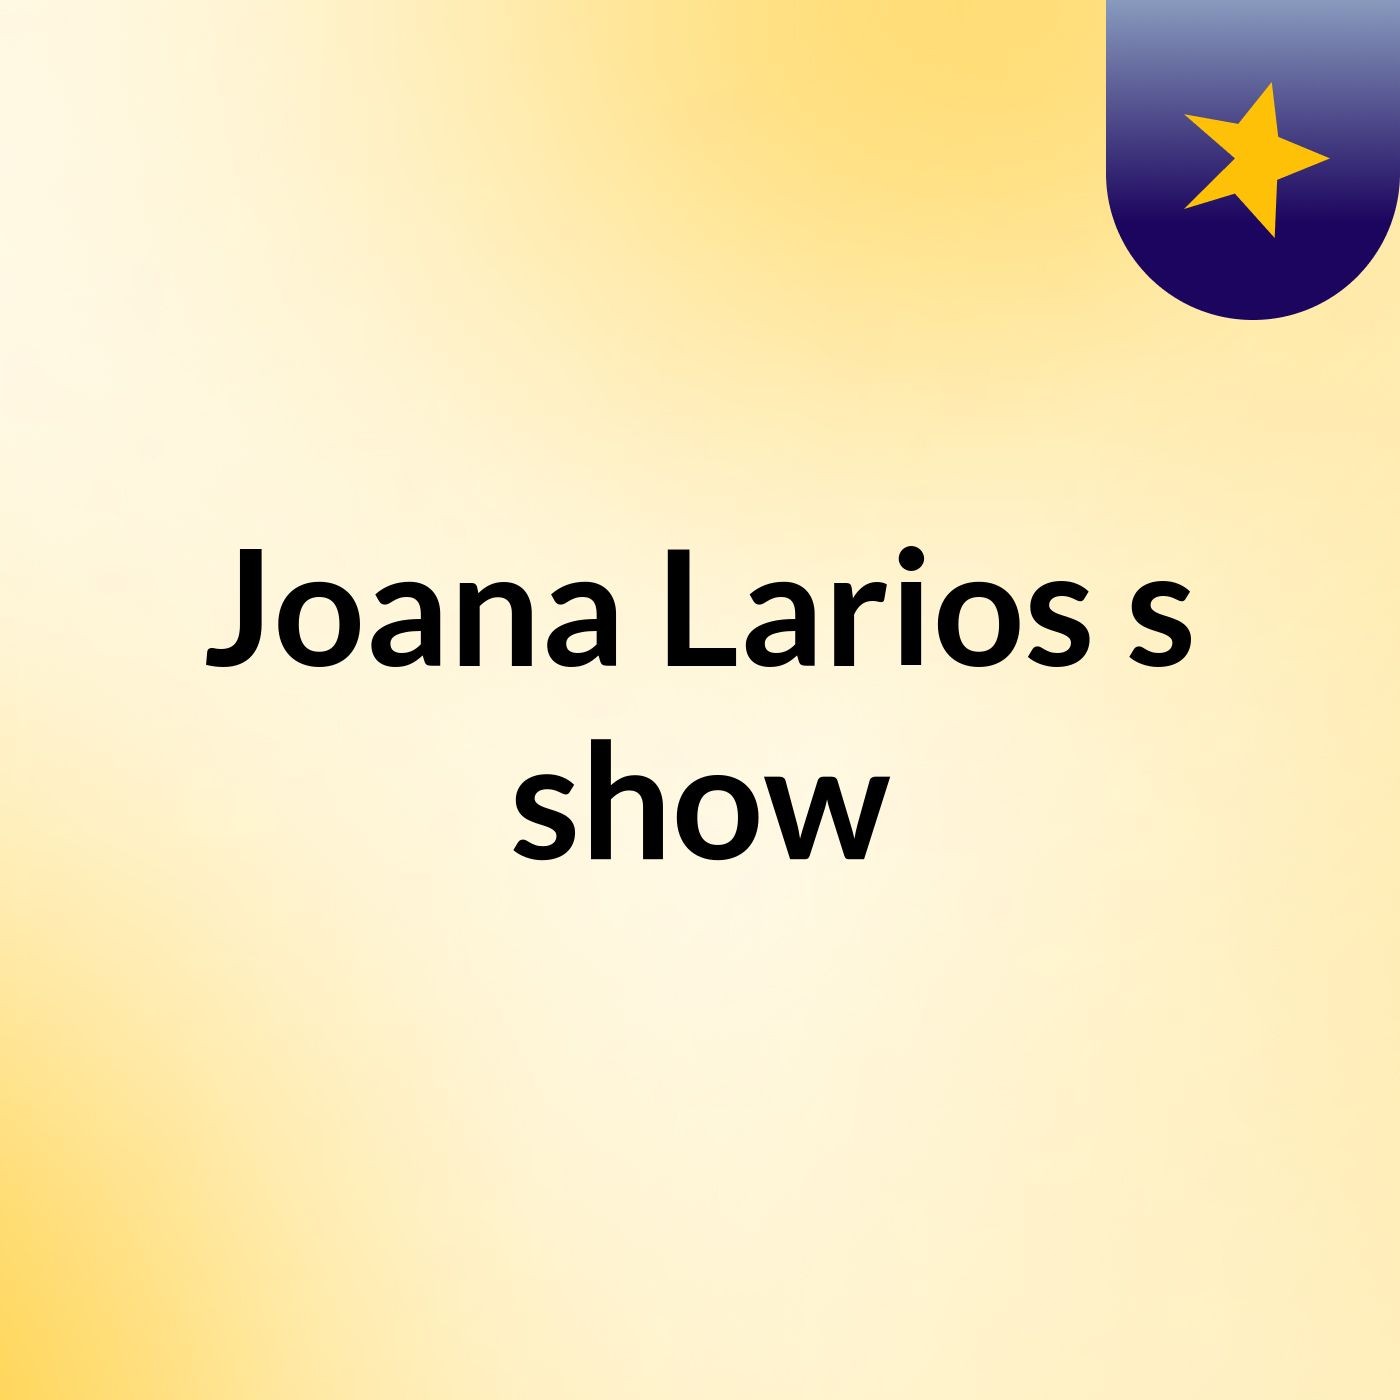 Joana Larios's show